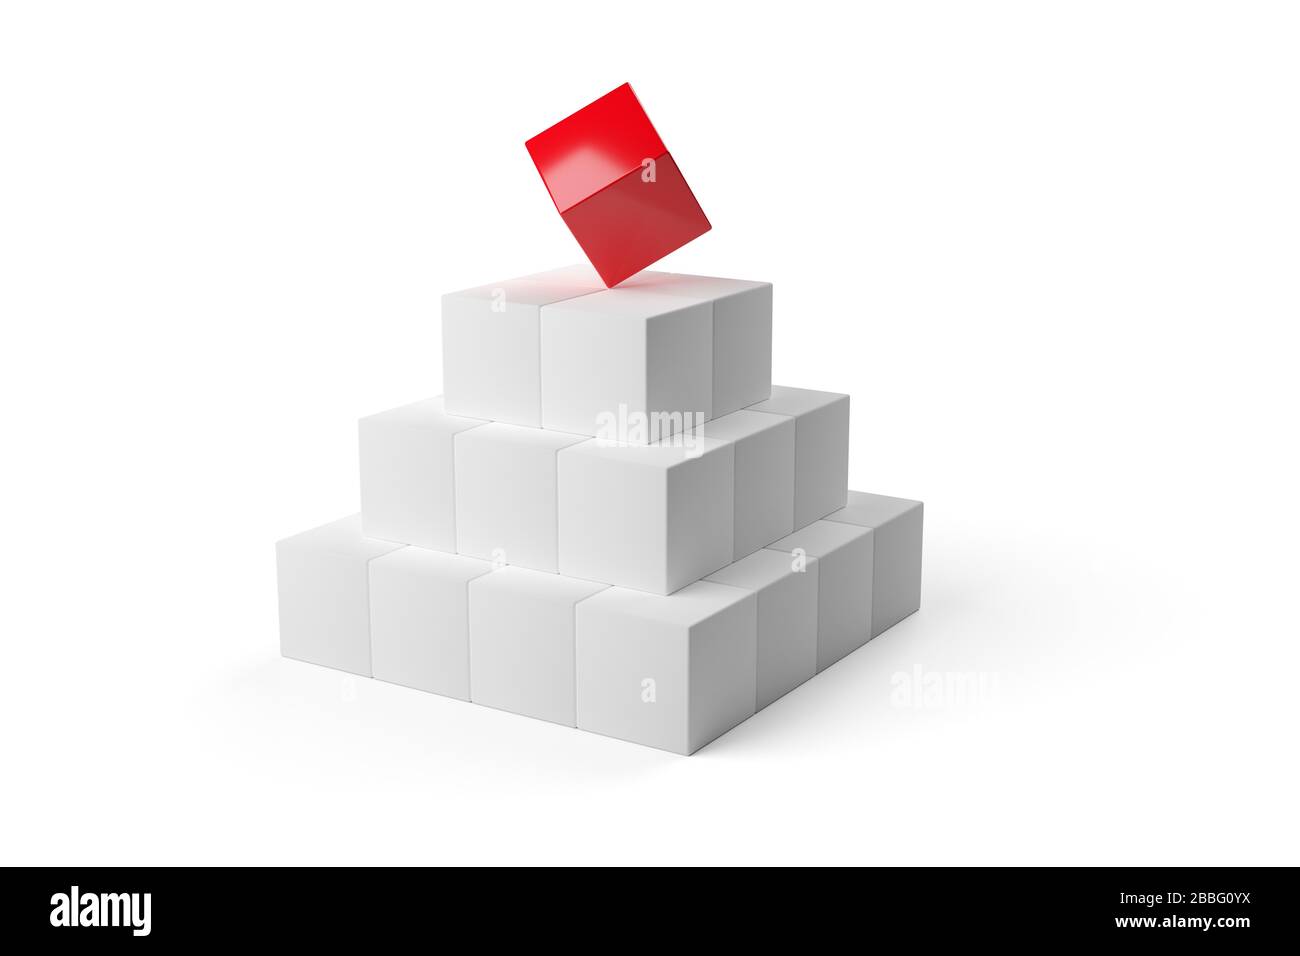 Roter Würfel auf der Pyramide aus weißen Würfeln über weißem Hintergrund - Softwaremodul, Teamarbeit oder das herausstehen aus dem Crowd Leadership Konzept, 3D illu Stockfoto